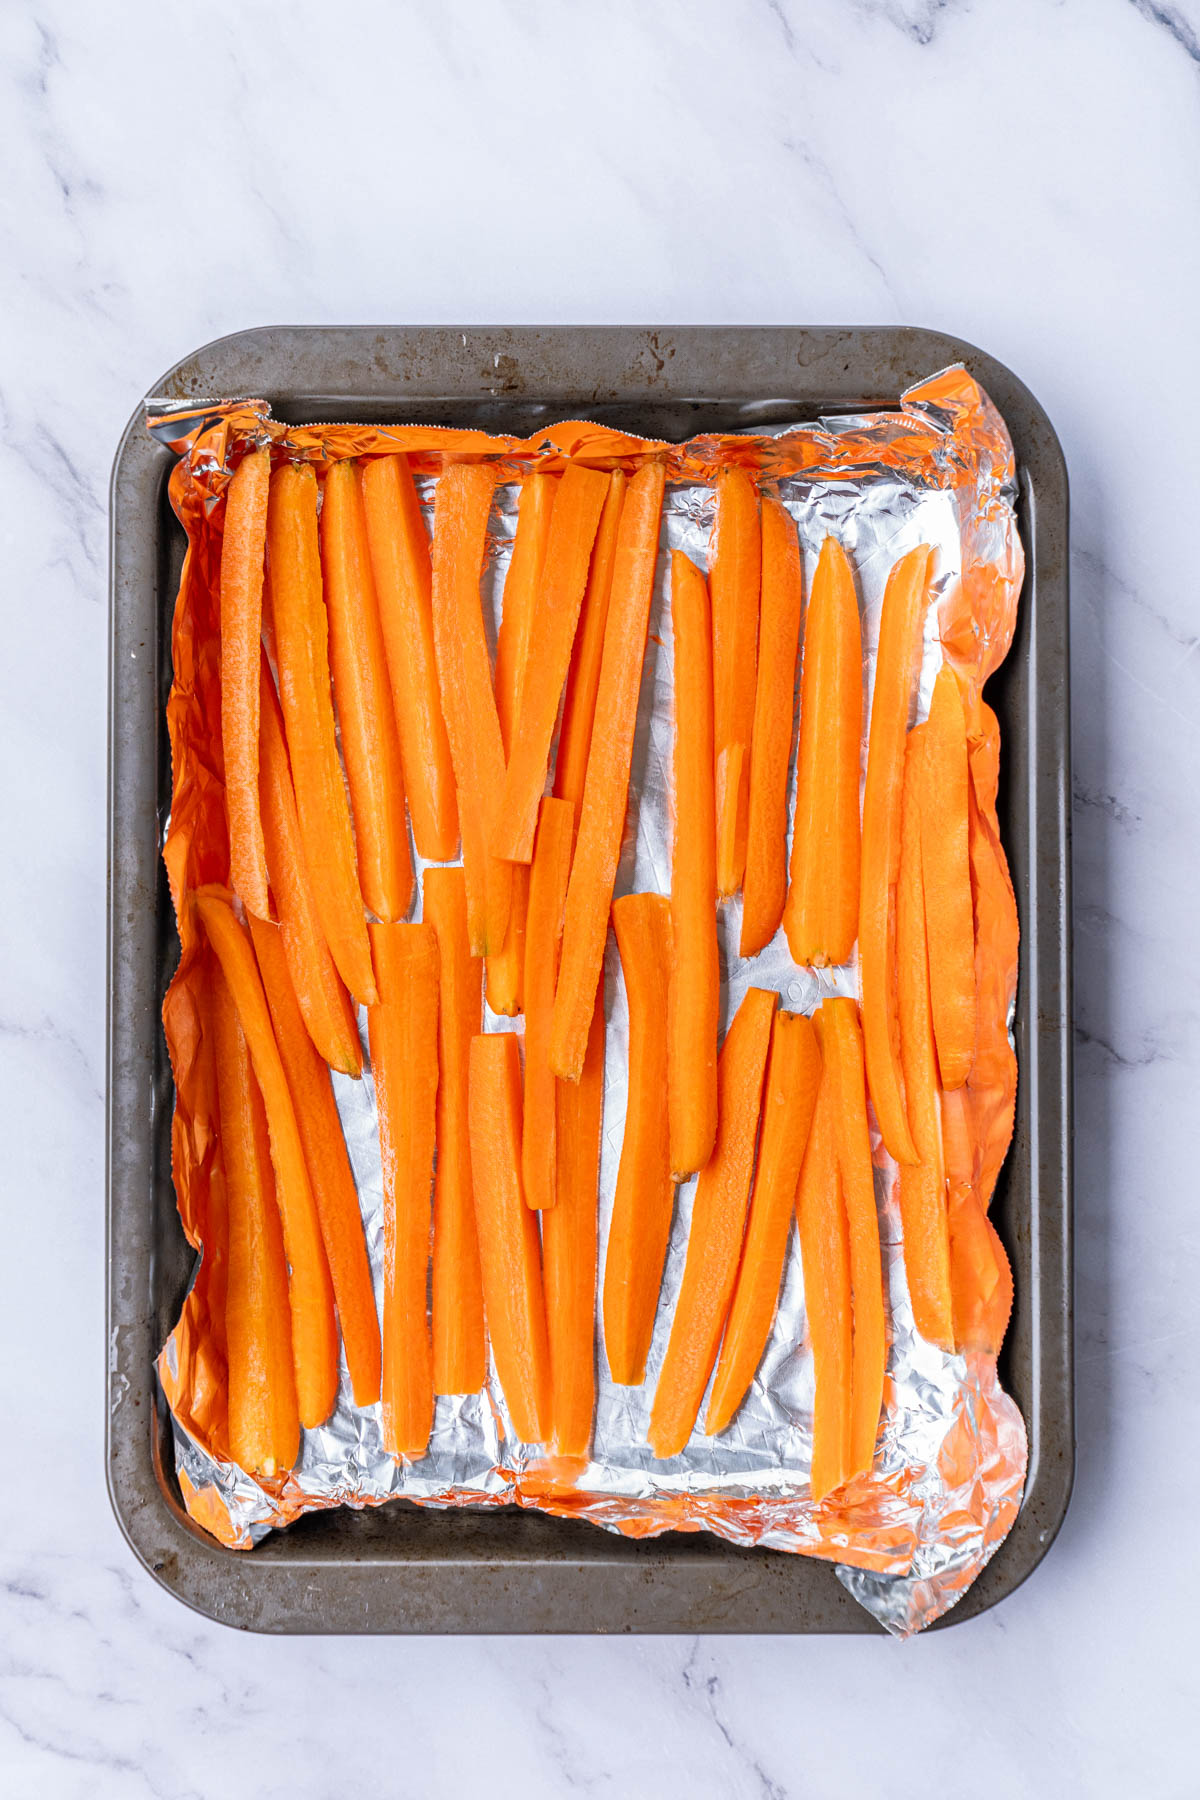 Carrots in foil on a baking sheet.